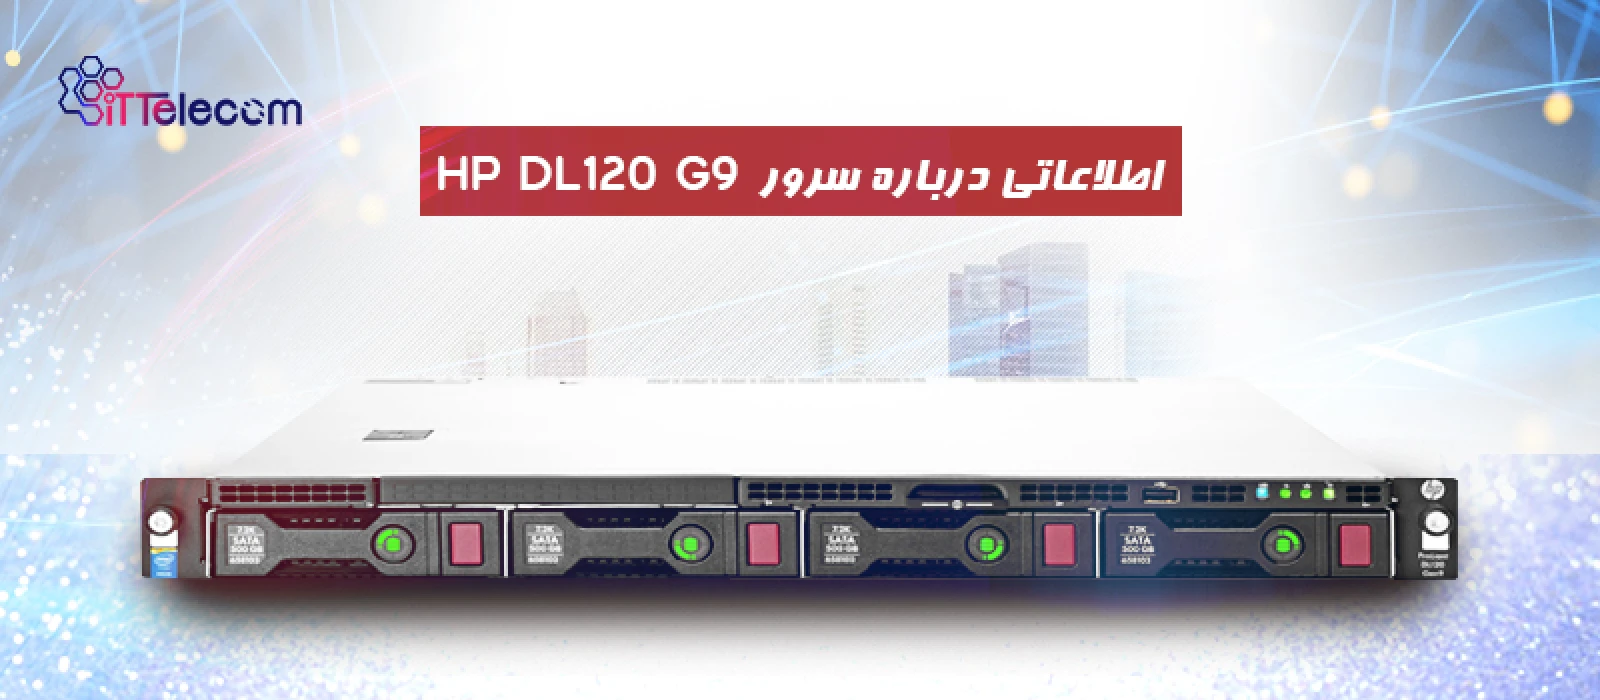 اطلاعاتی درباره سرور HP DL120 G9 